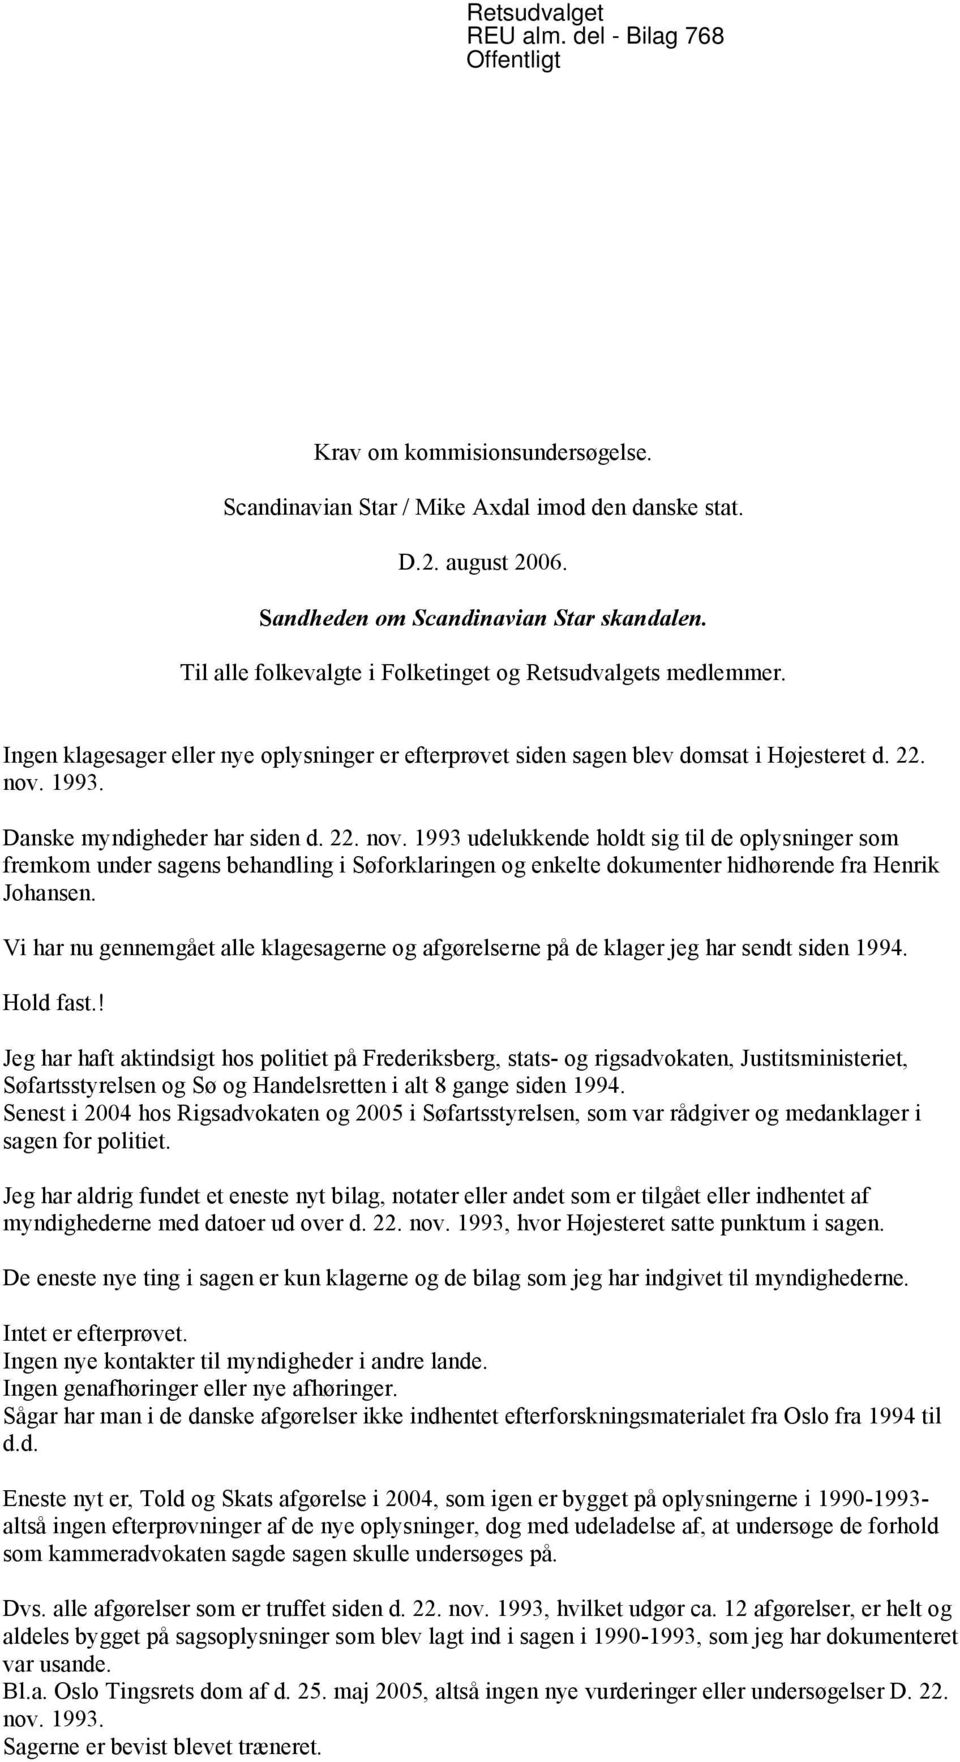 Danske myndigheder har siden d. 22. nov. 1993 udelukkende holdt sig til de oplysninger som fremkom under sagens behandling i Søforklaringen og enkelte dokumenter hidhørende fra Henrik Johansen.